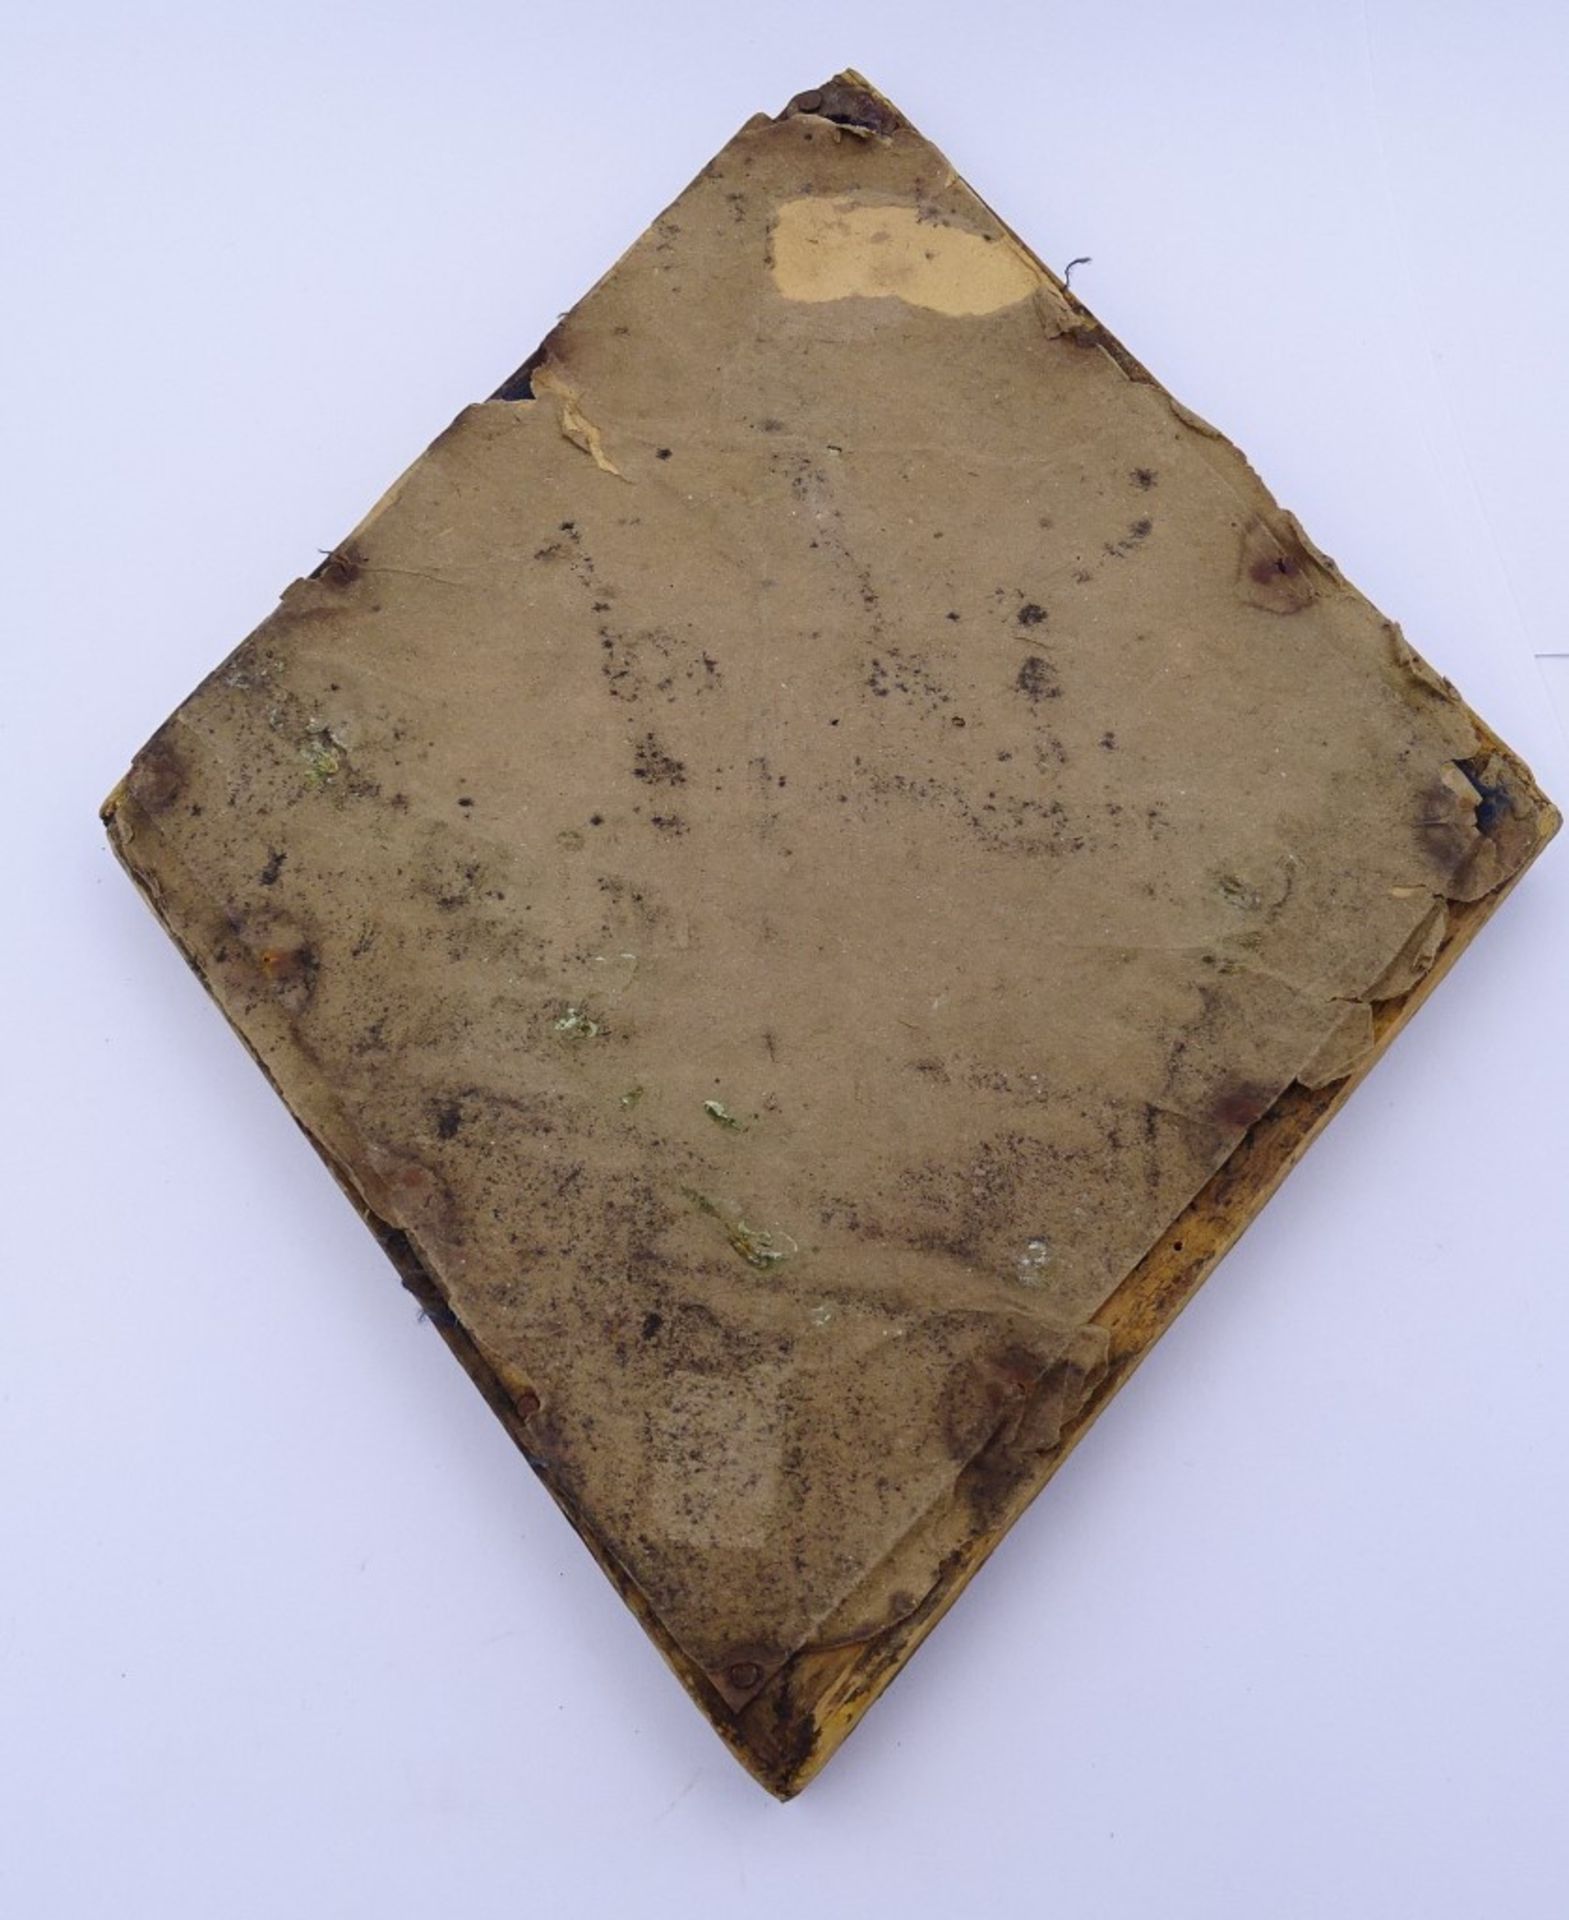 Votivgabe aus Silber mit Ziermonogramm hinter Glas,RG 21,5x17cm,Alters-u. Gebrauchsspuren - Bild 3 aus 3